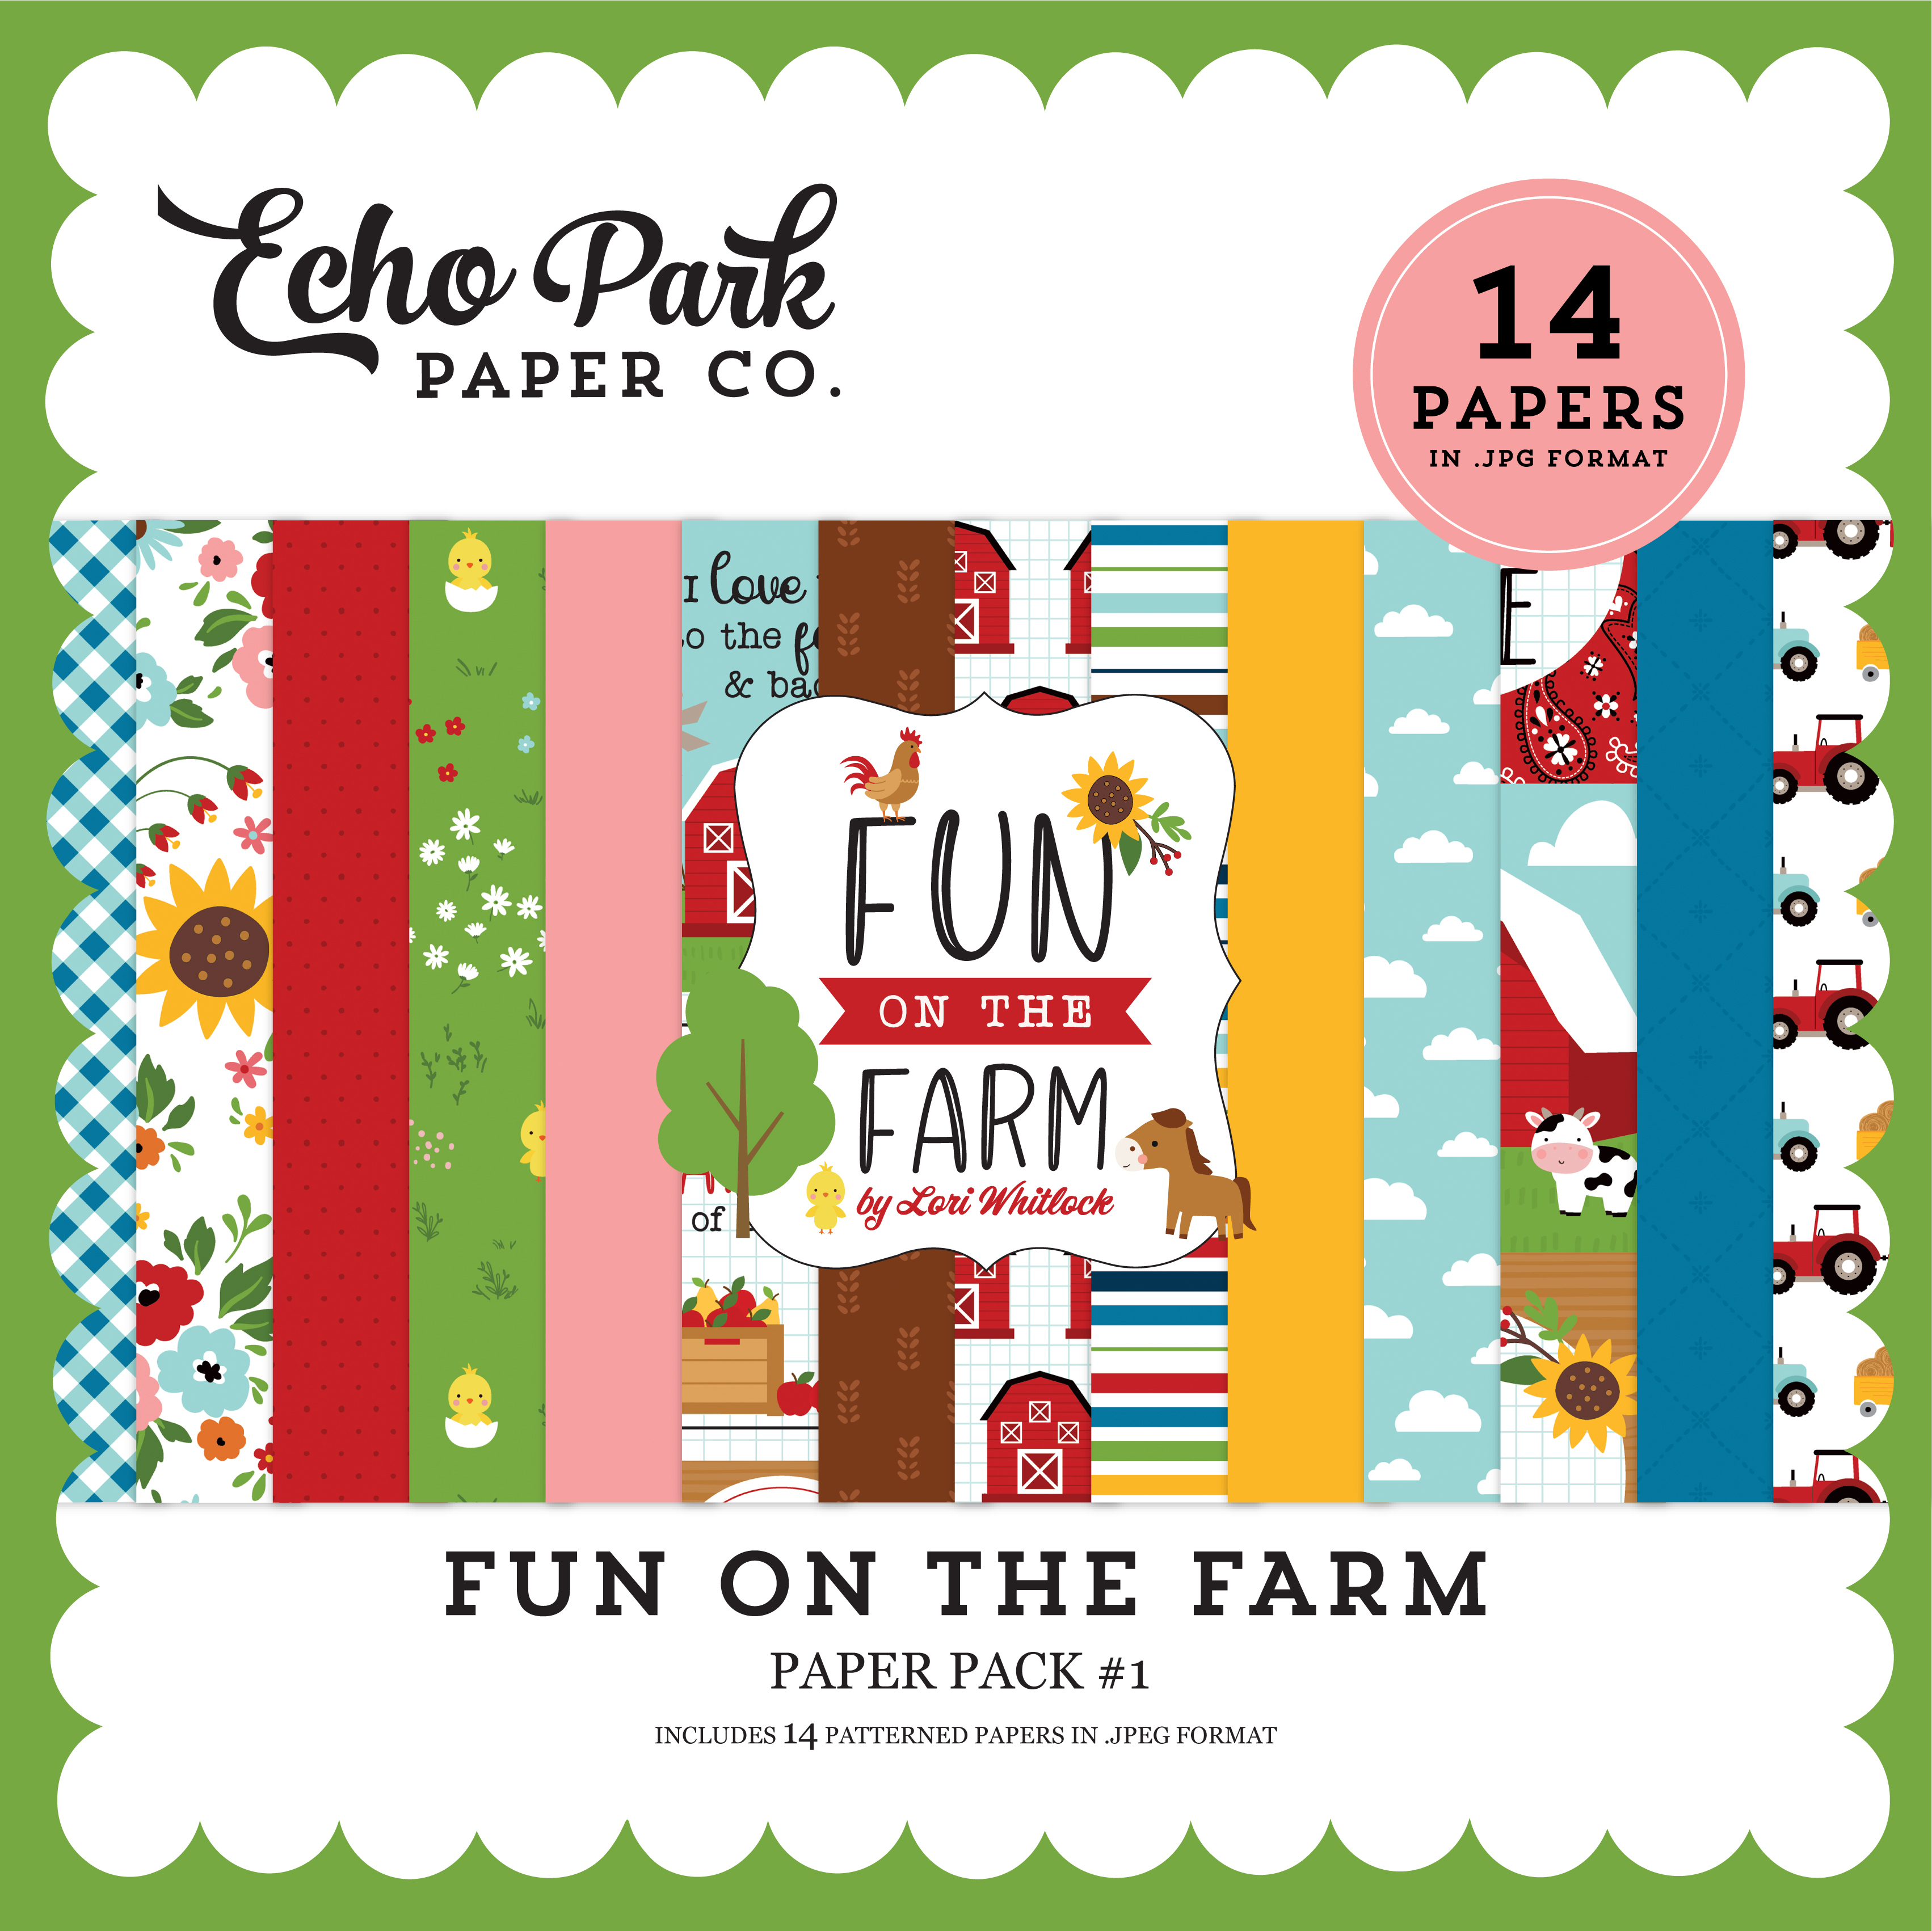 Fun On The Farm 6x6 Paper Pad